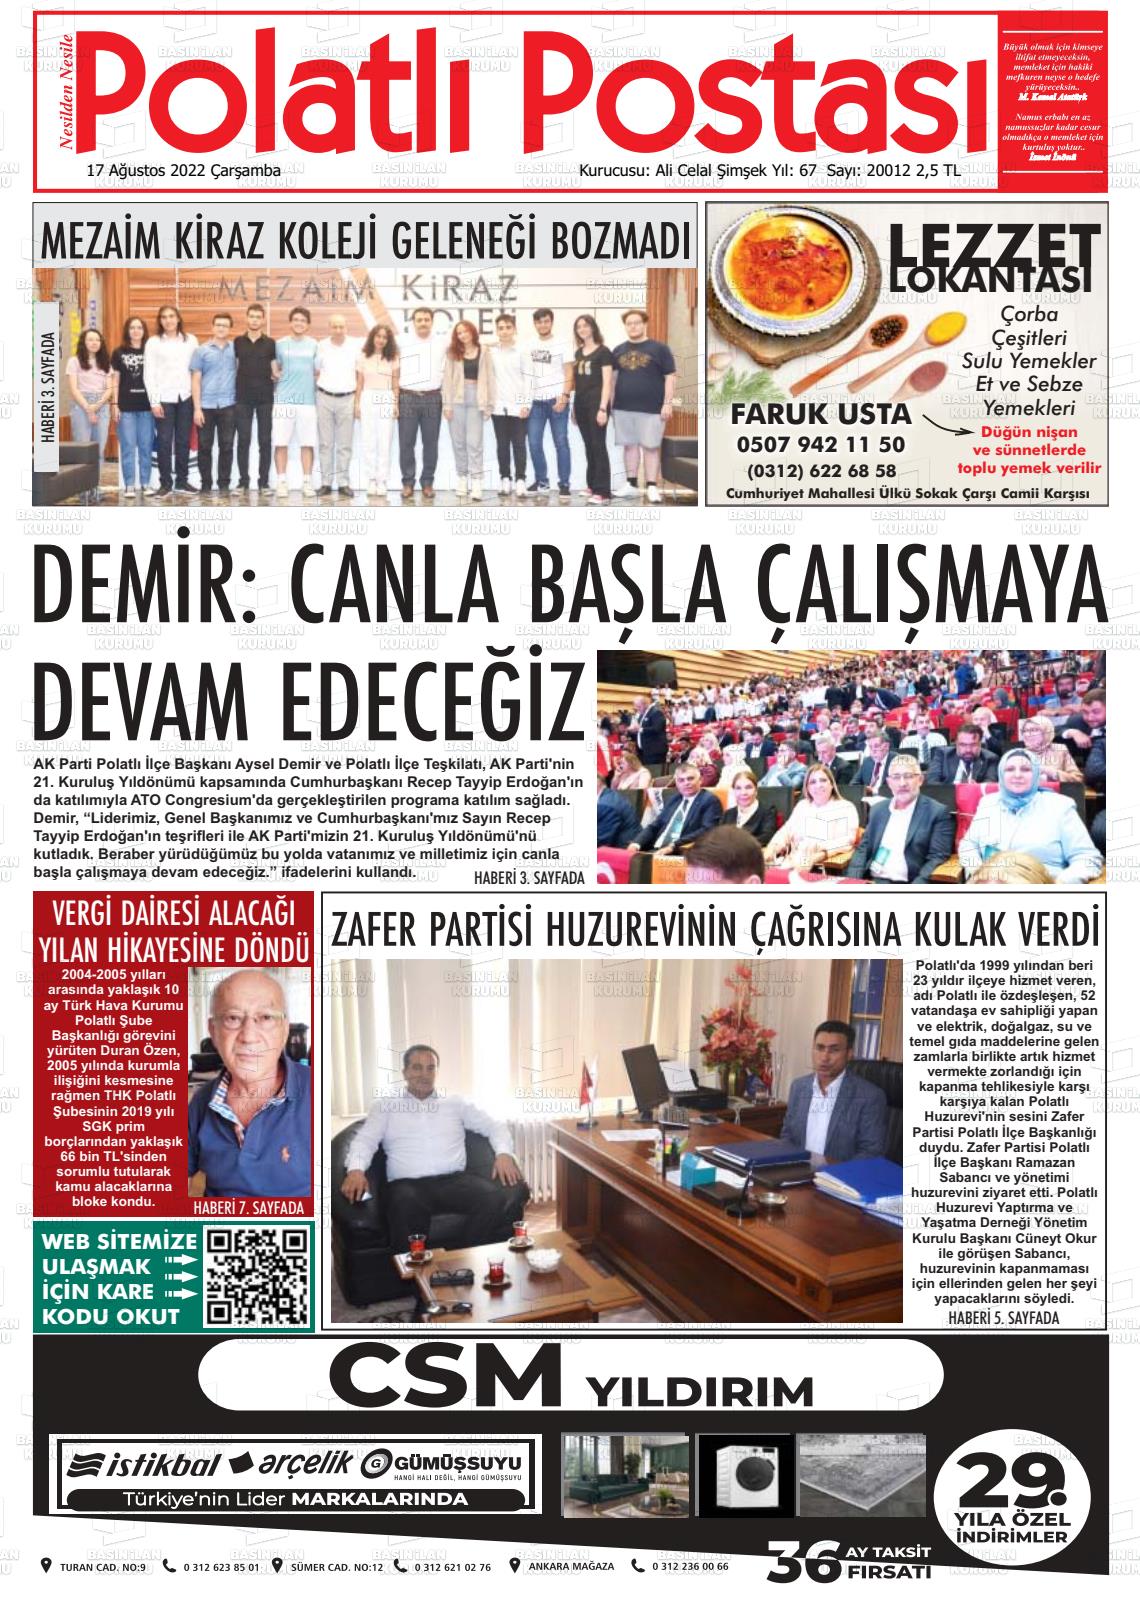 17 Ağustos 2022 Polatlı Postası Gazete Manşeti